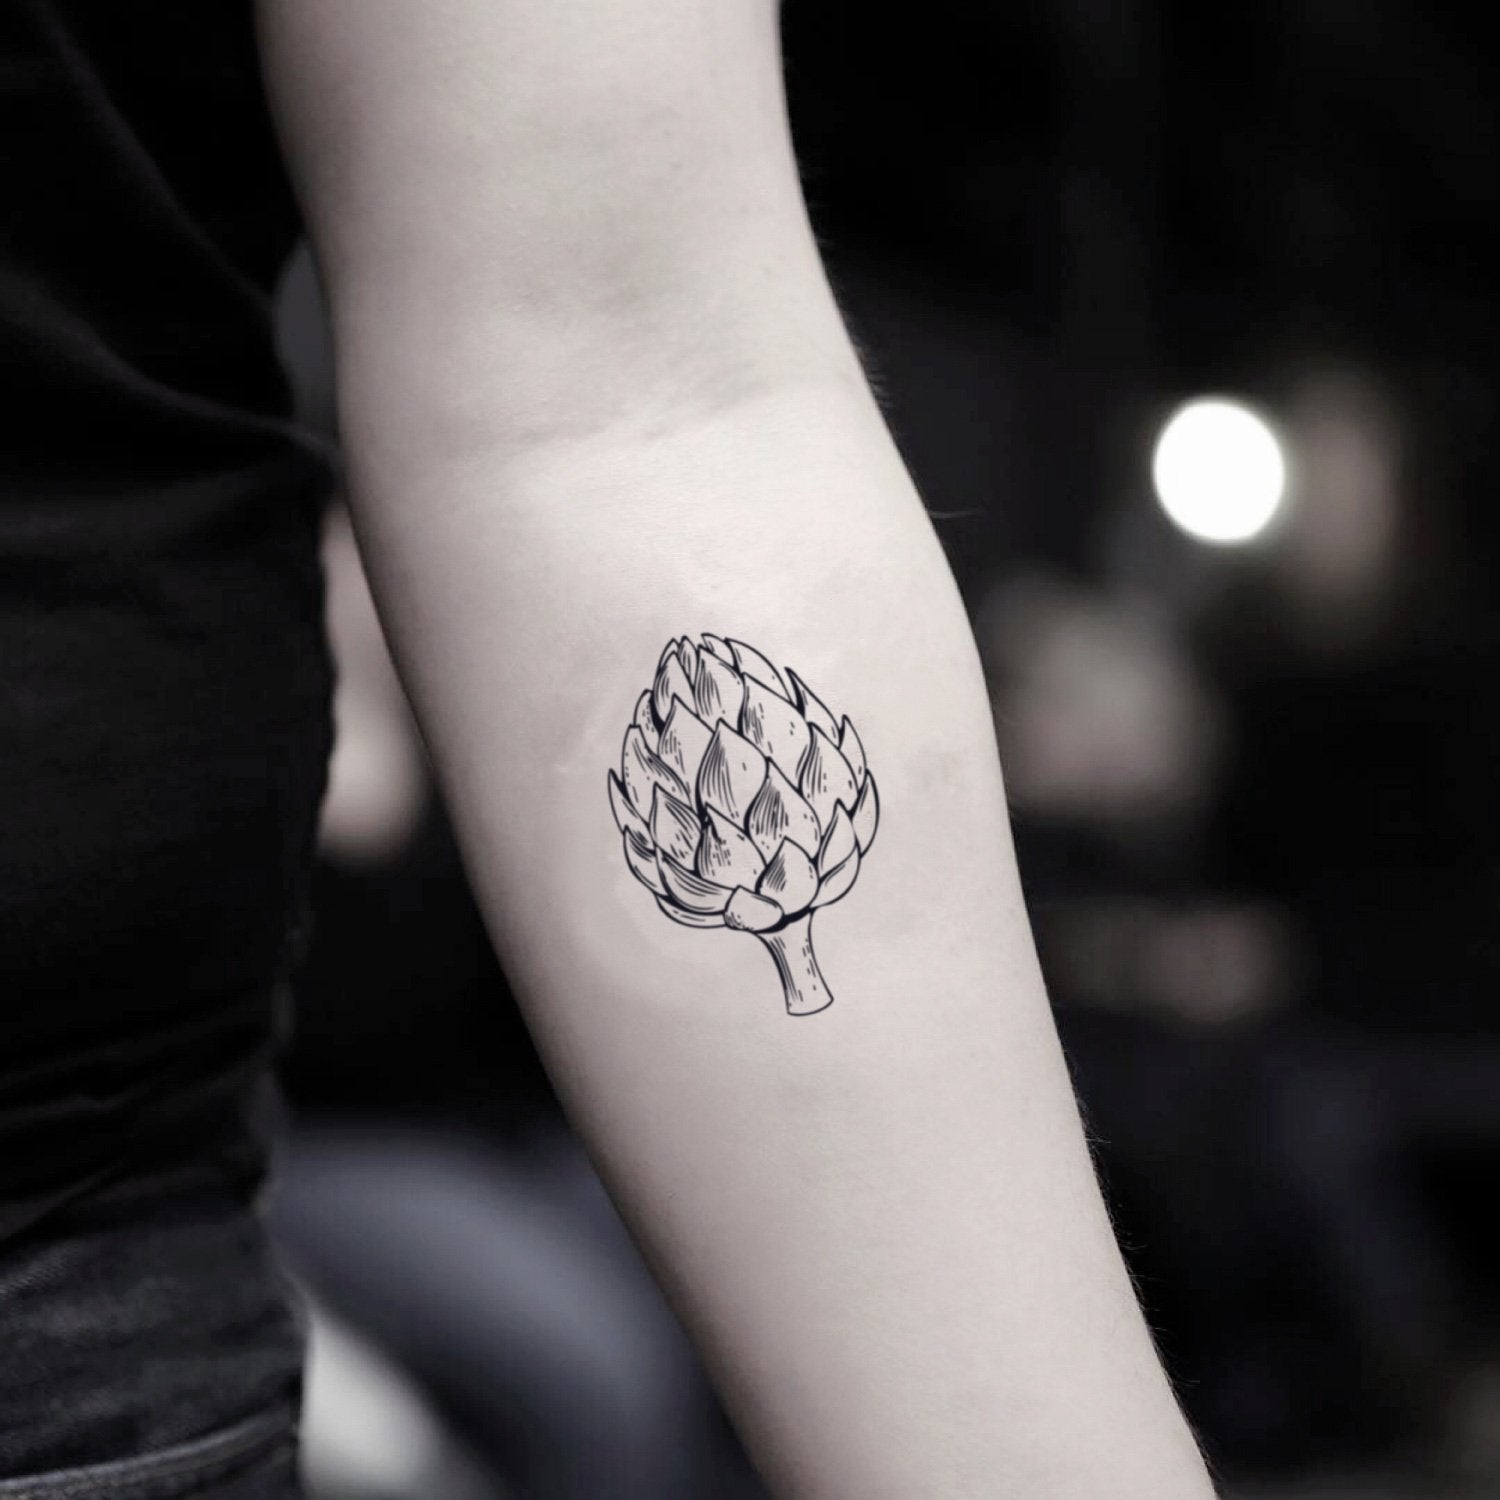 fake small artichoke nature temporary tattoo sticker design idea on inner arm